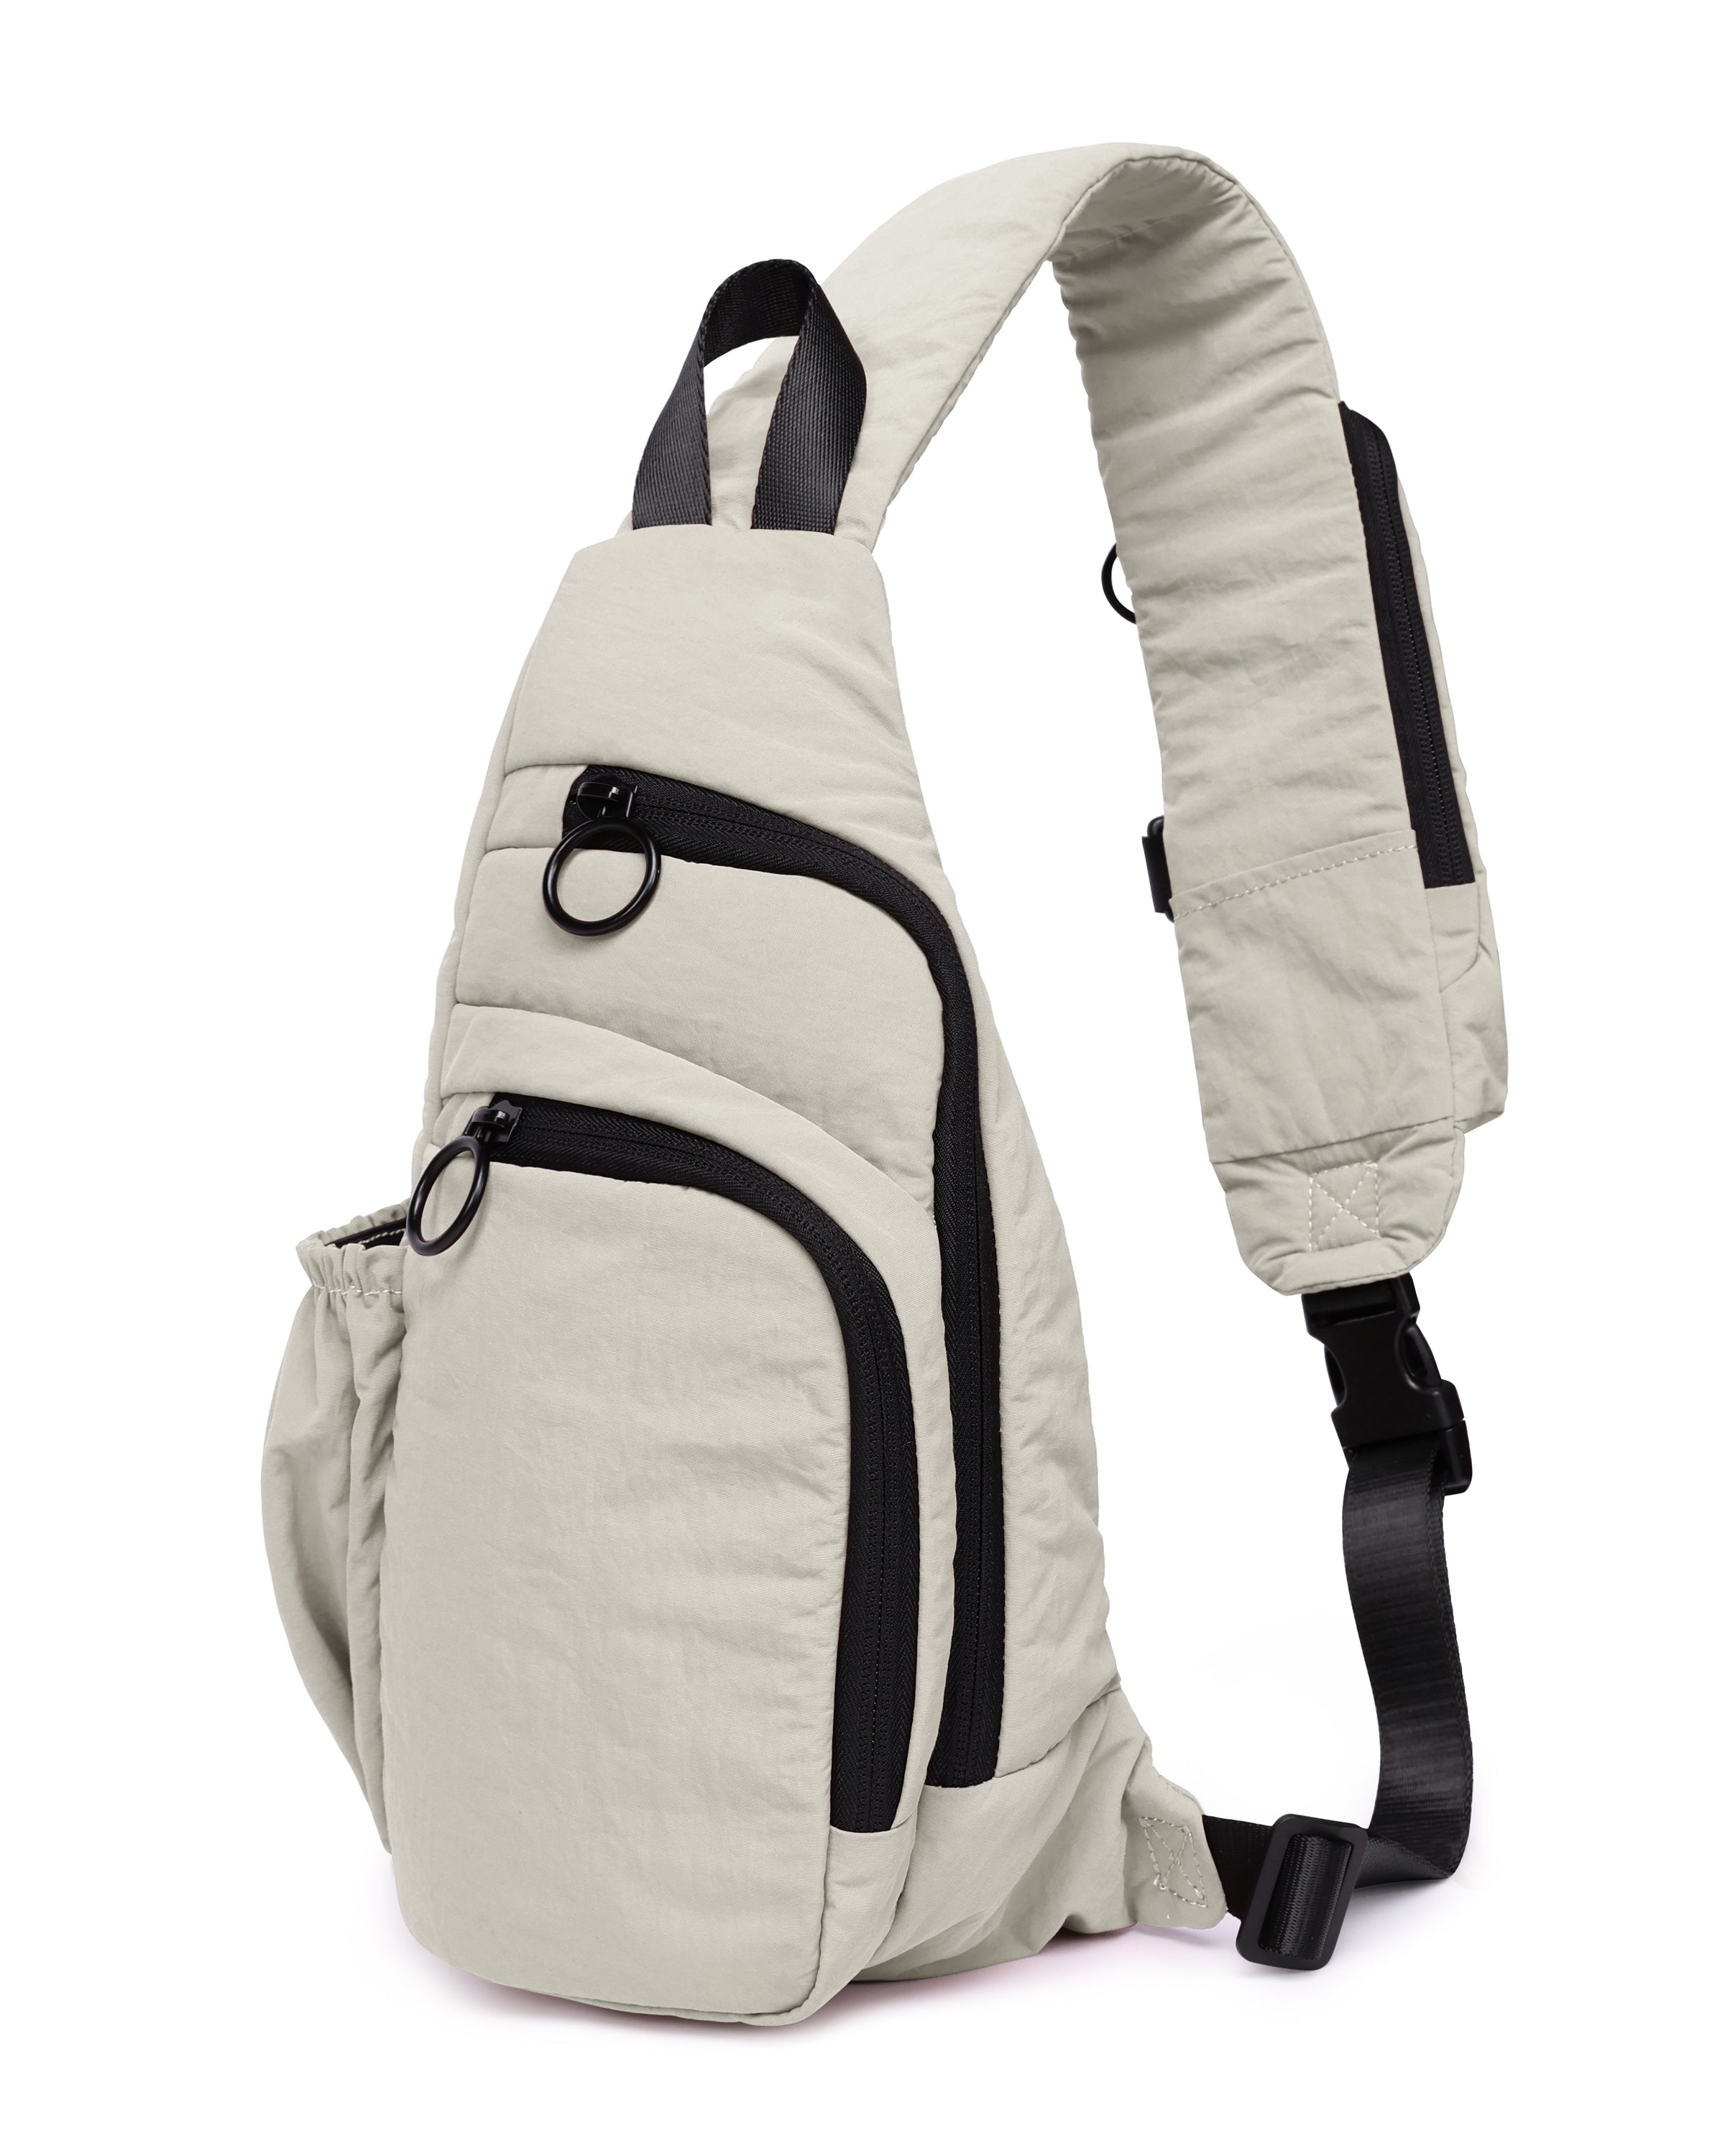 Crossbody Lightweight Sling Bag Light Grey - ododos